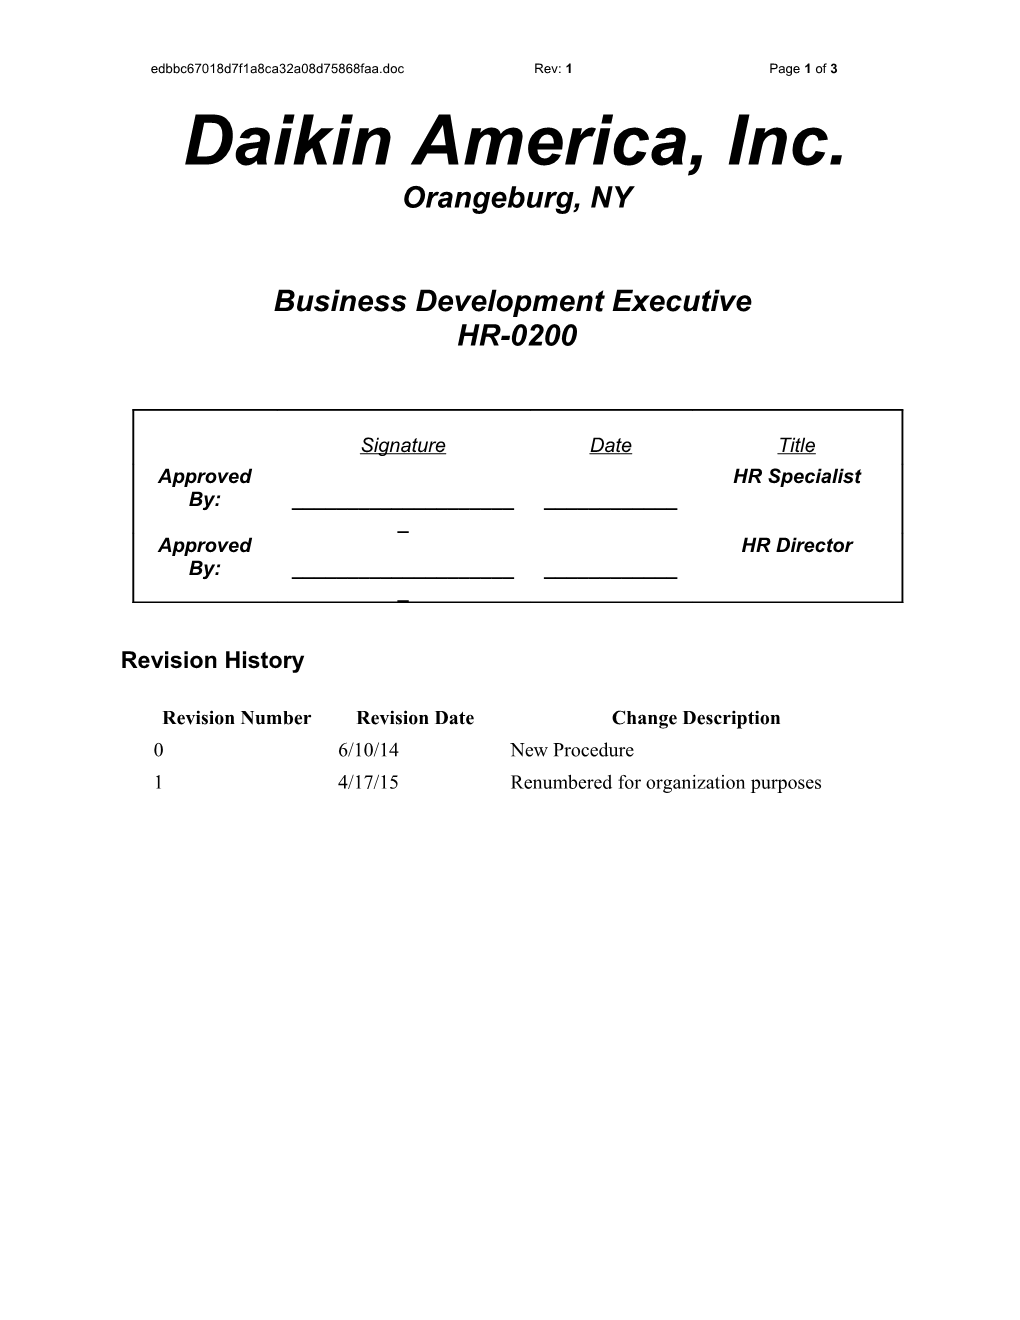 Daikin America, Inc